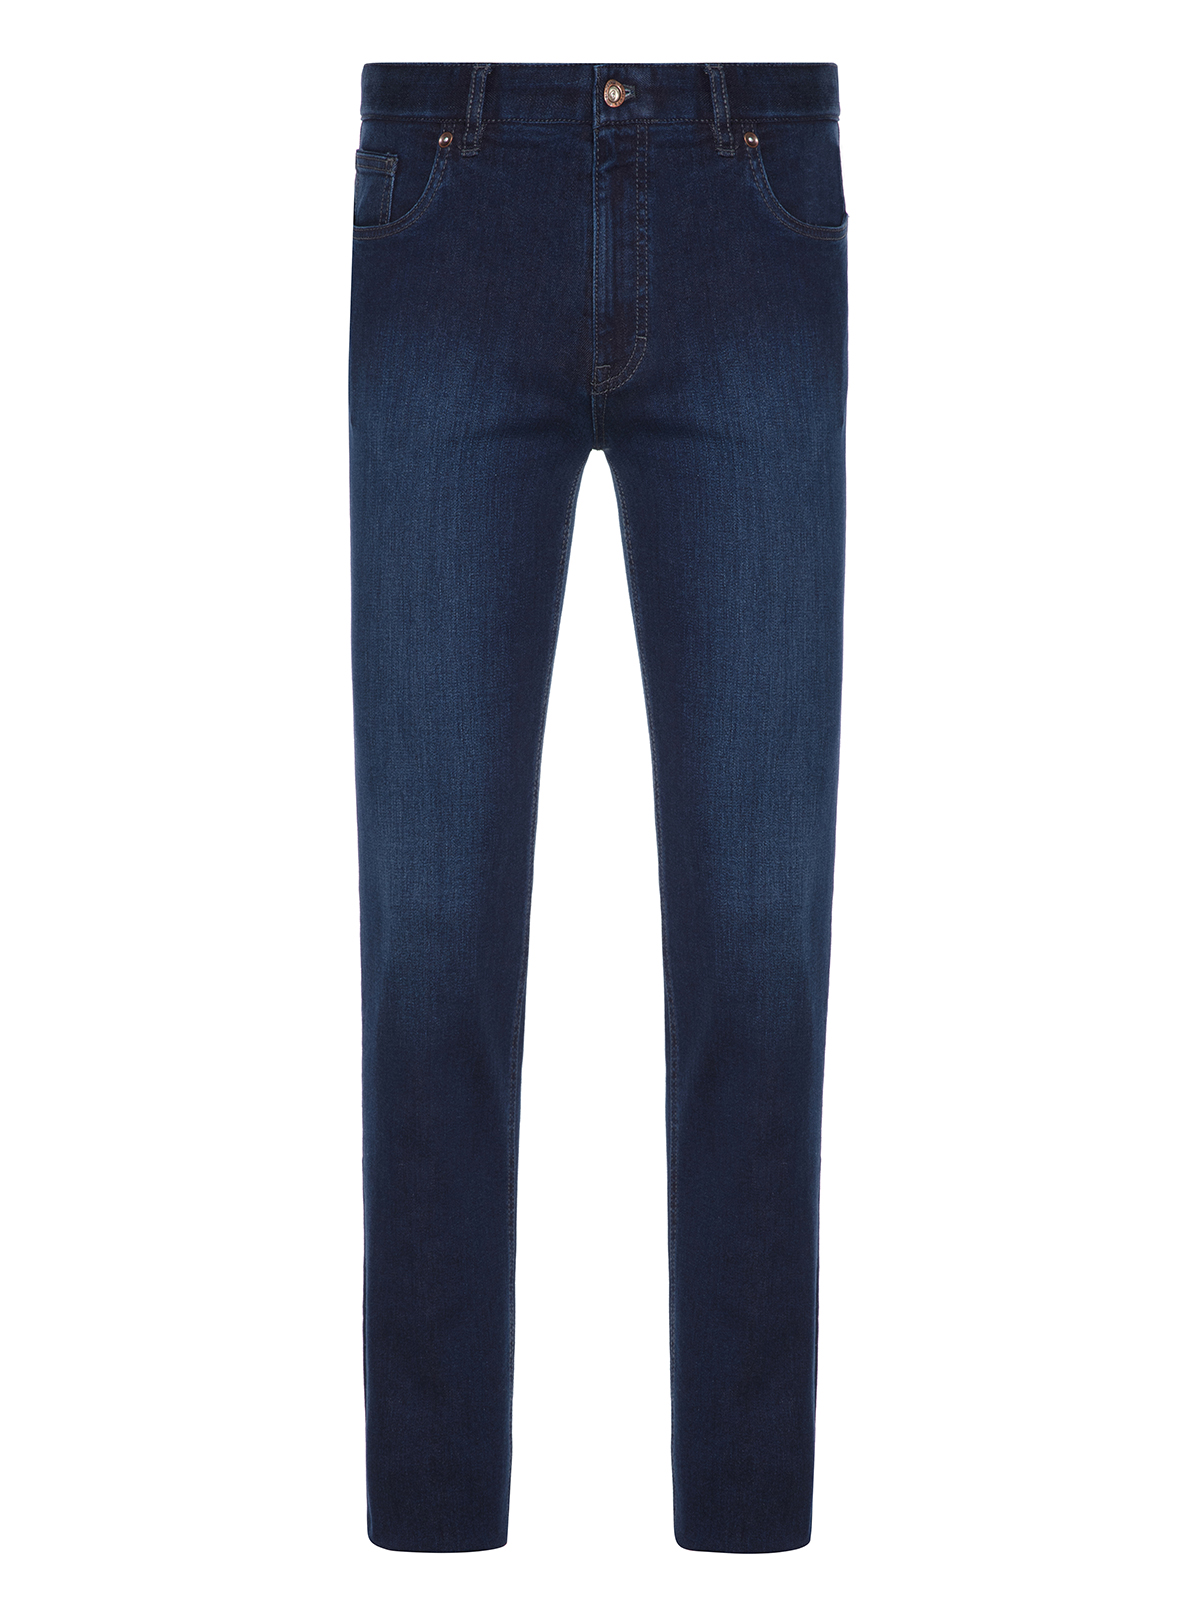 Hiltl - Hiltl Dry Denim Coton Elastane Lacivert Parker 5 Cep Regular Fit Pantolon